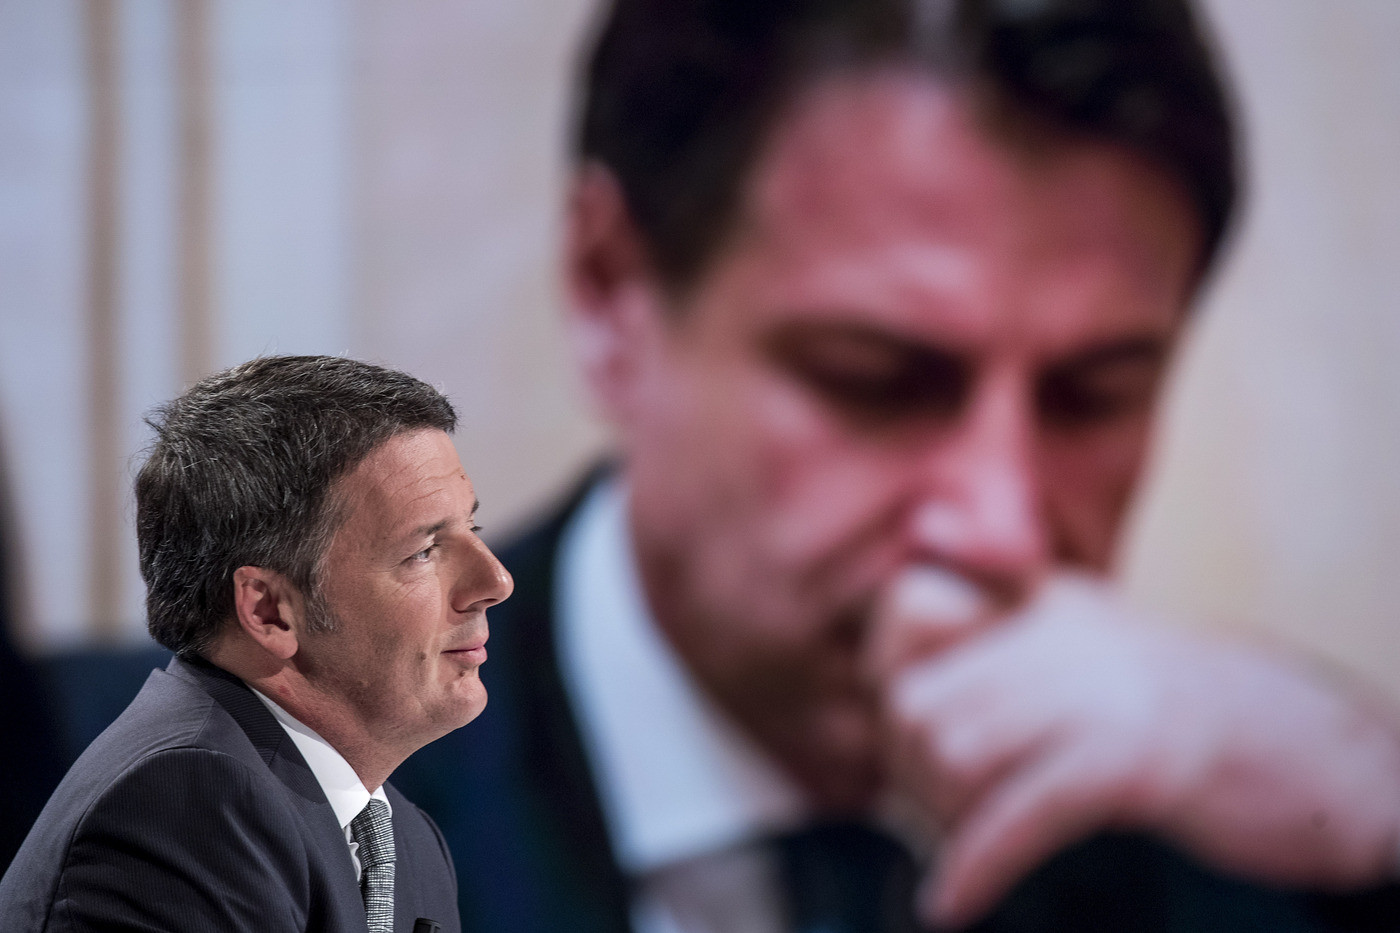 Orlando-Renzi: botta e risposta. Poi l’ex premier a Conte: “Chiarisca su Barr in Italia”